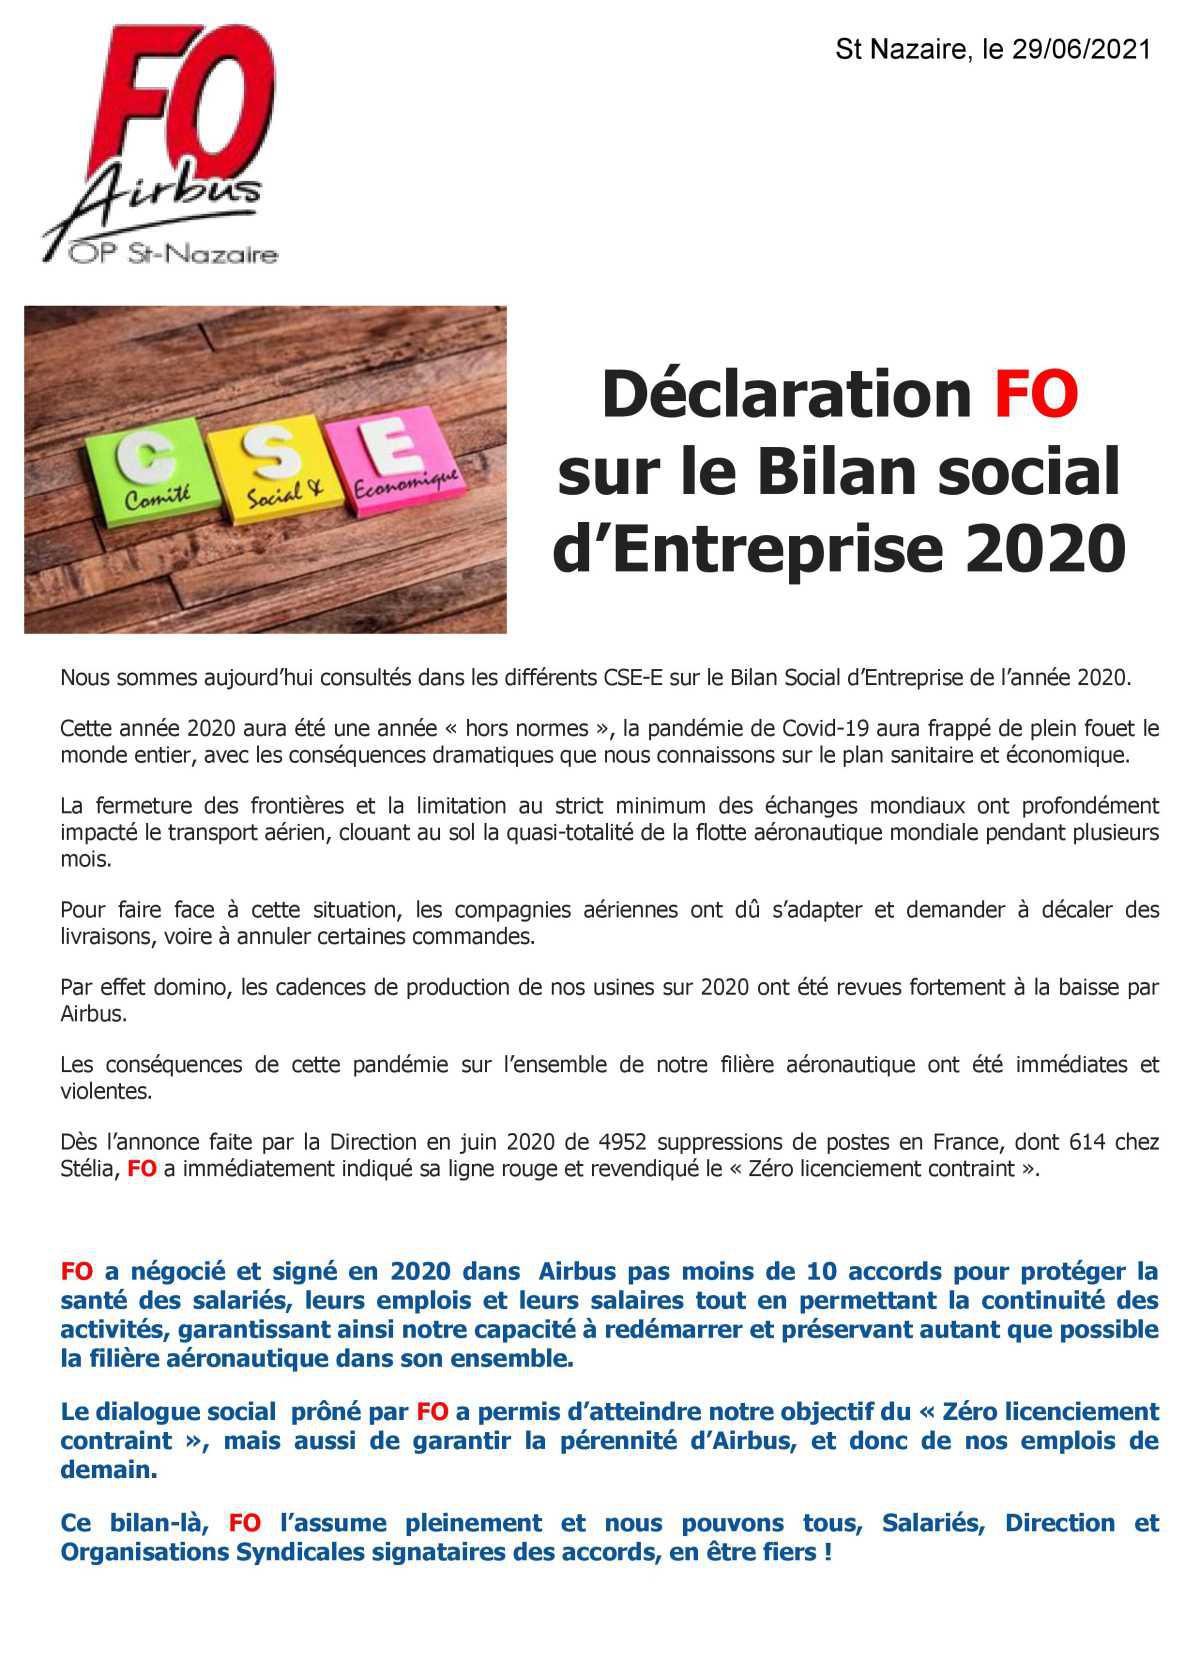 Déclaration FO sur le Bilan social d'entreprise 2020